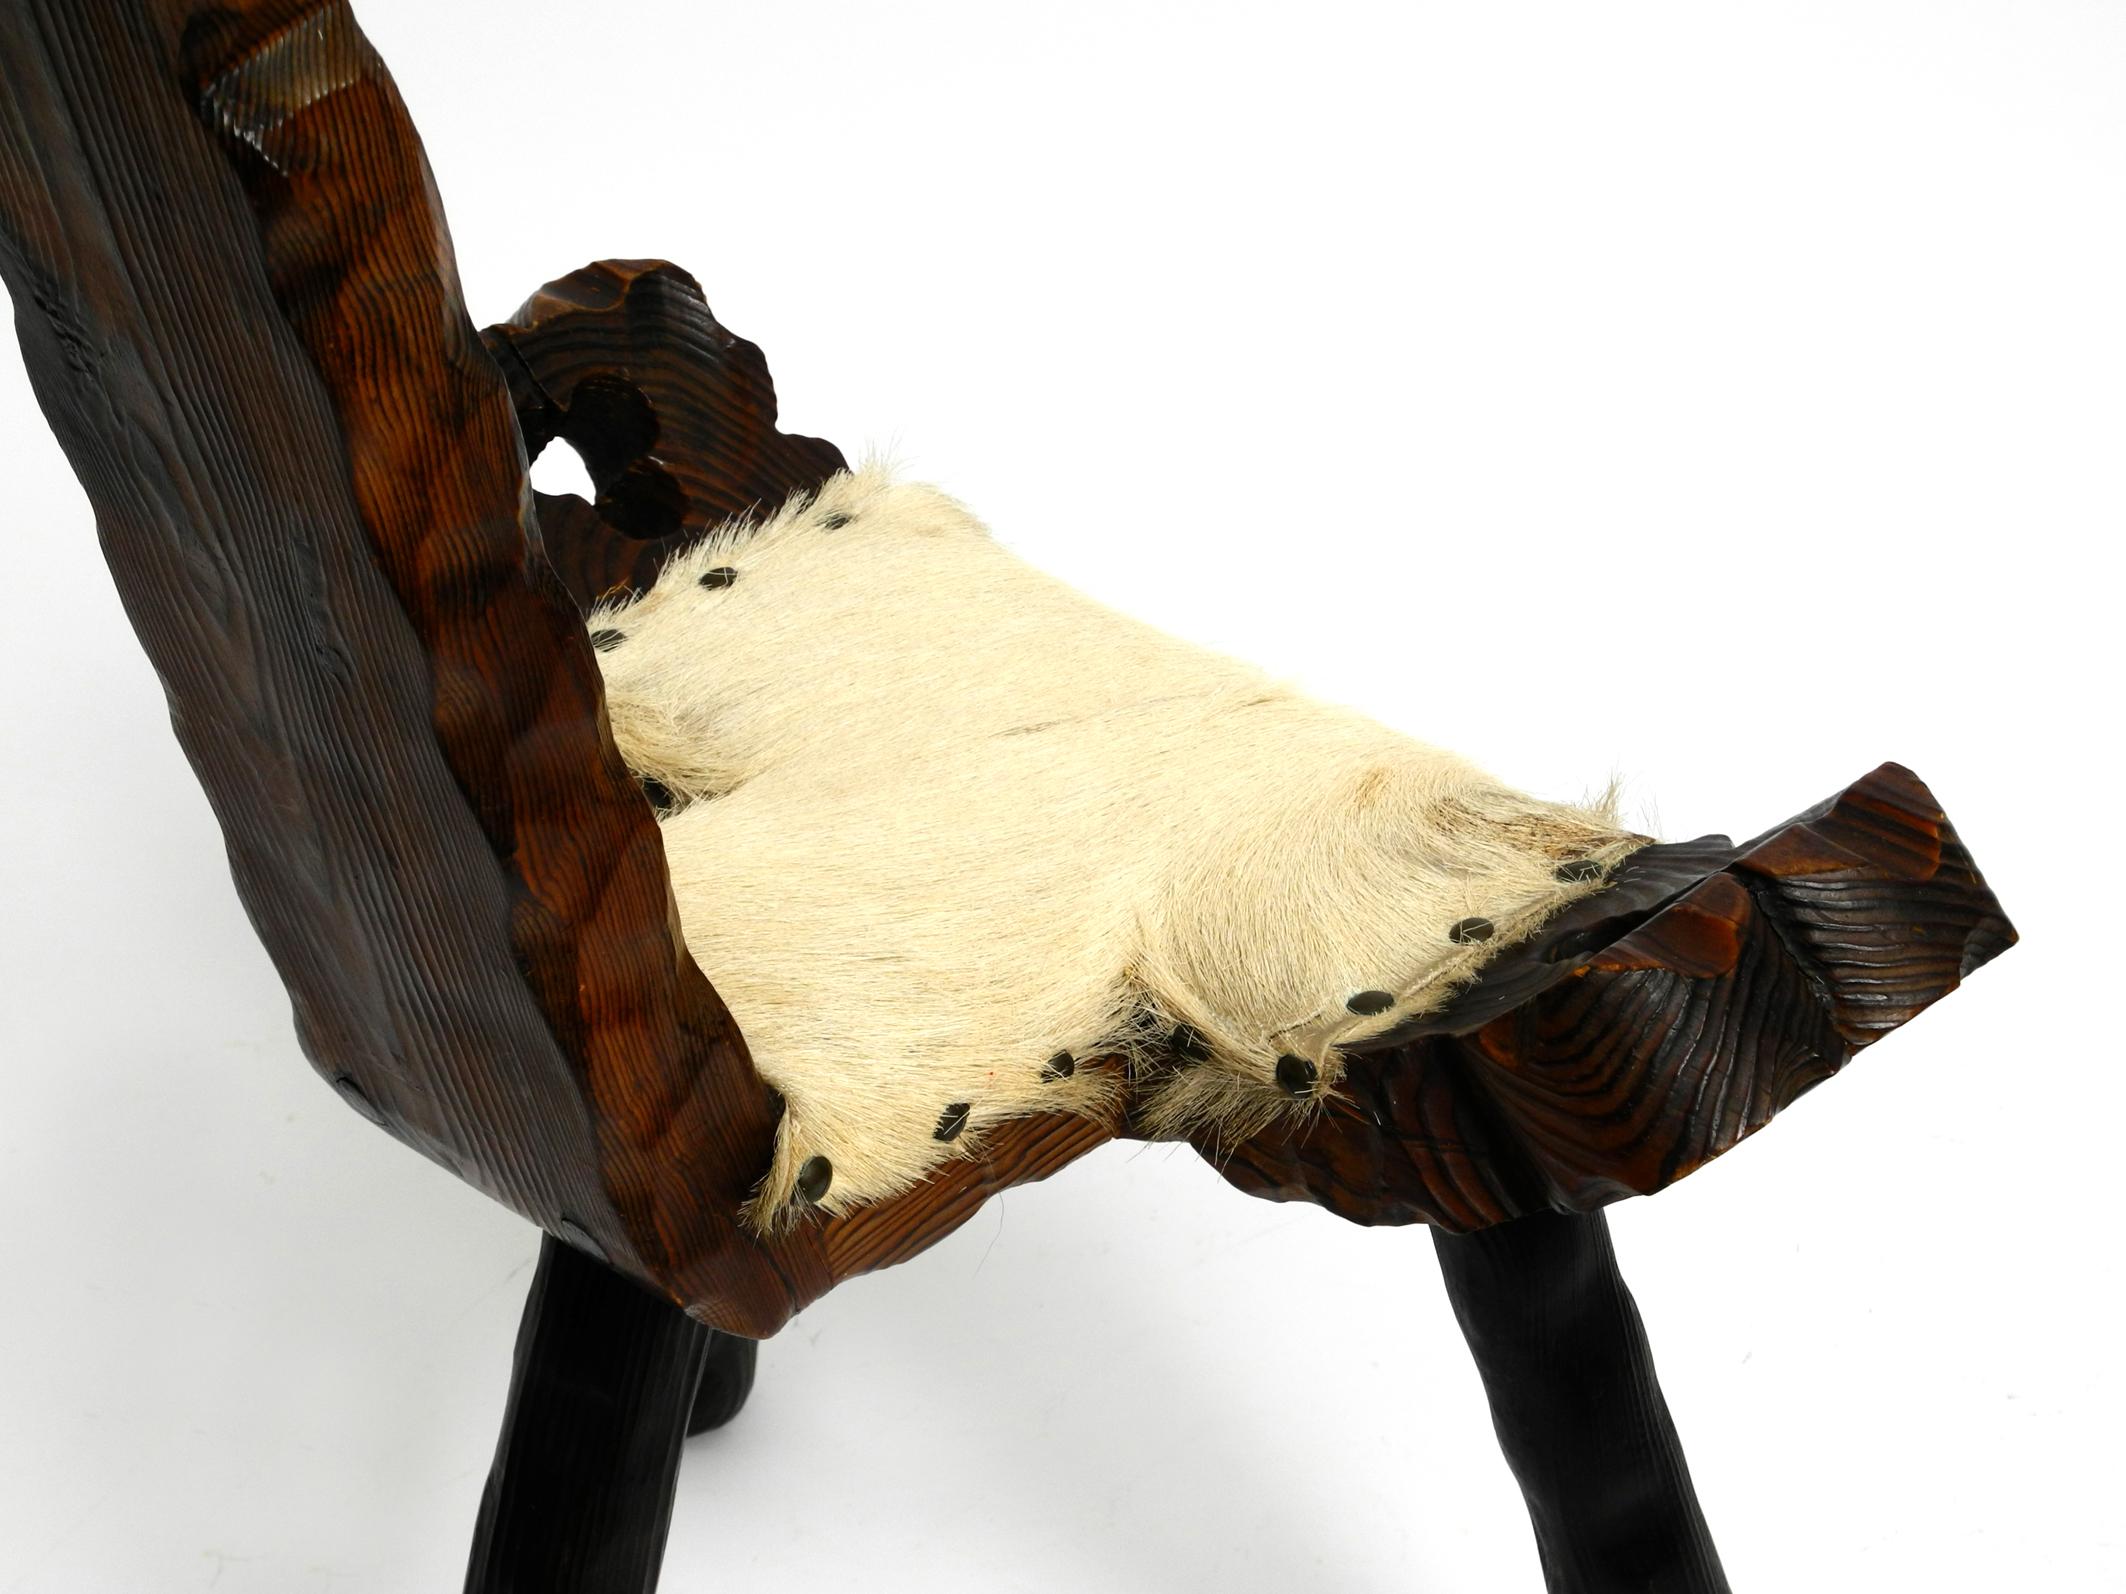 Cuir de vache Tabouret à trois pieds des années 1950 en Wood Wood massif noir-brun avec assise en peau de vache. en vente